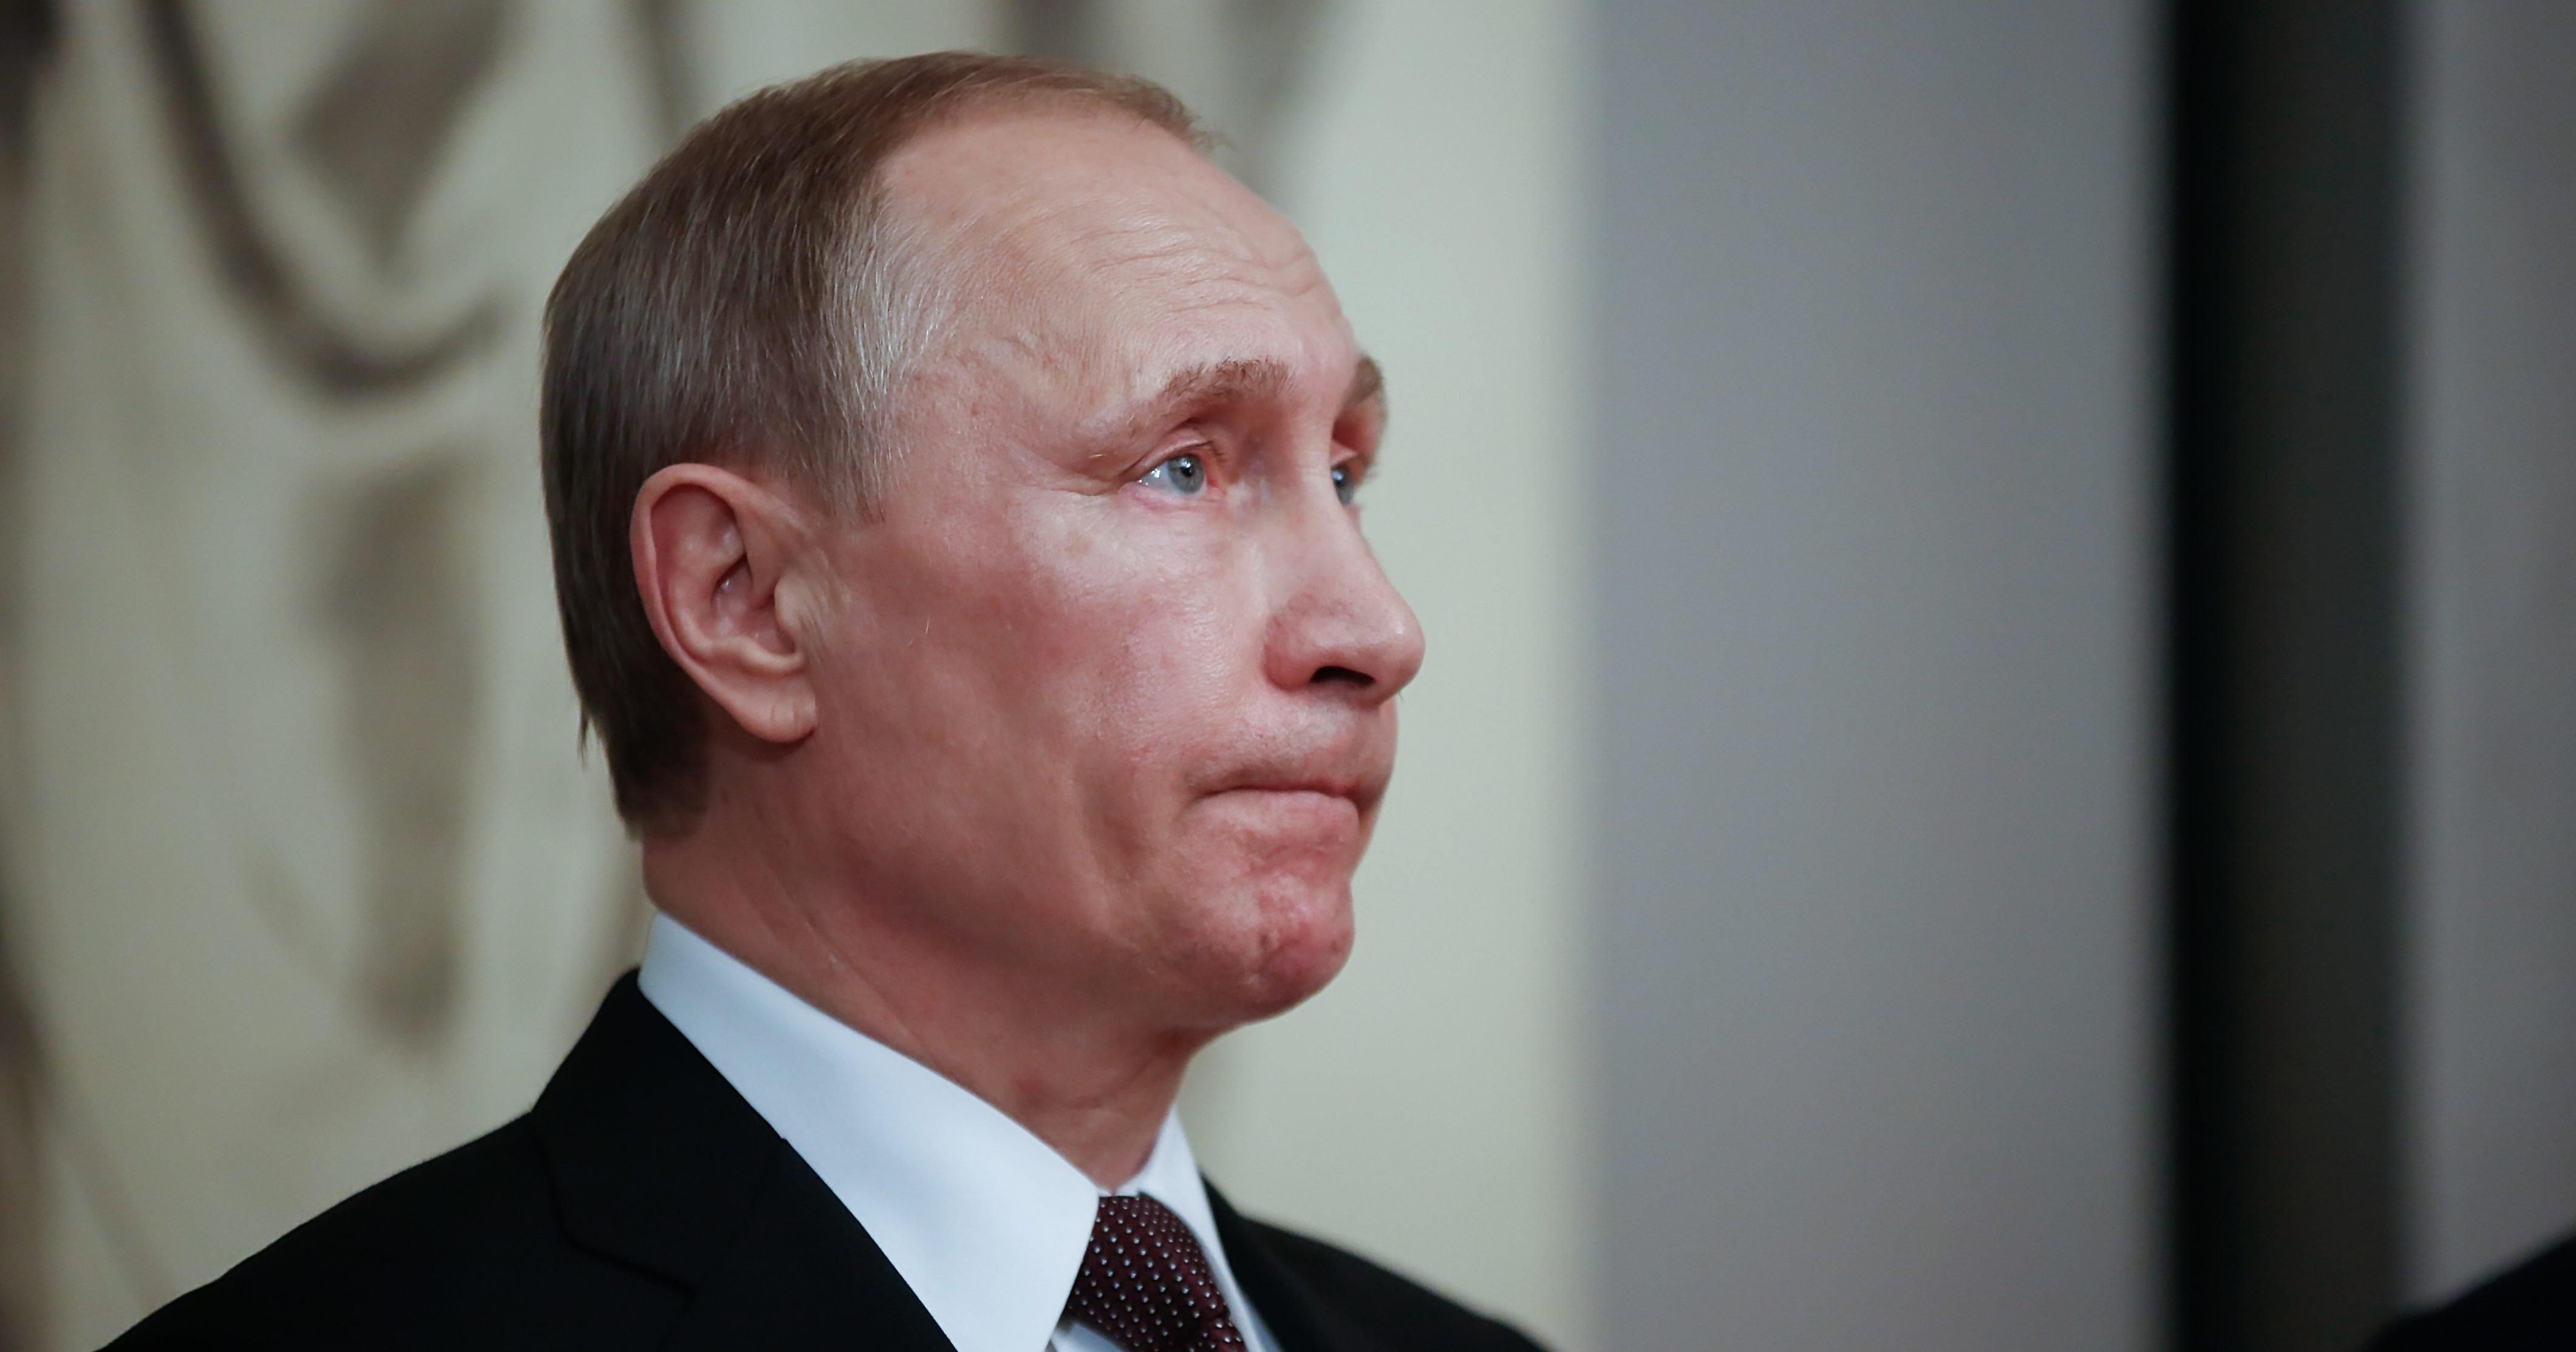 Настроения россиян в отношении Путина резко изменились: результаты опросов